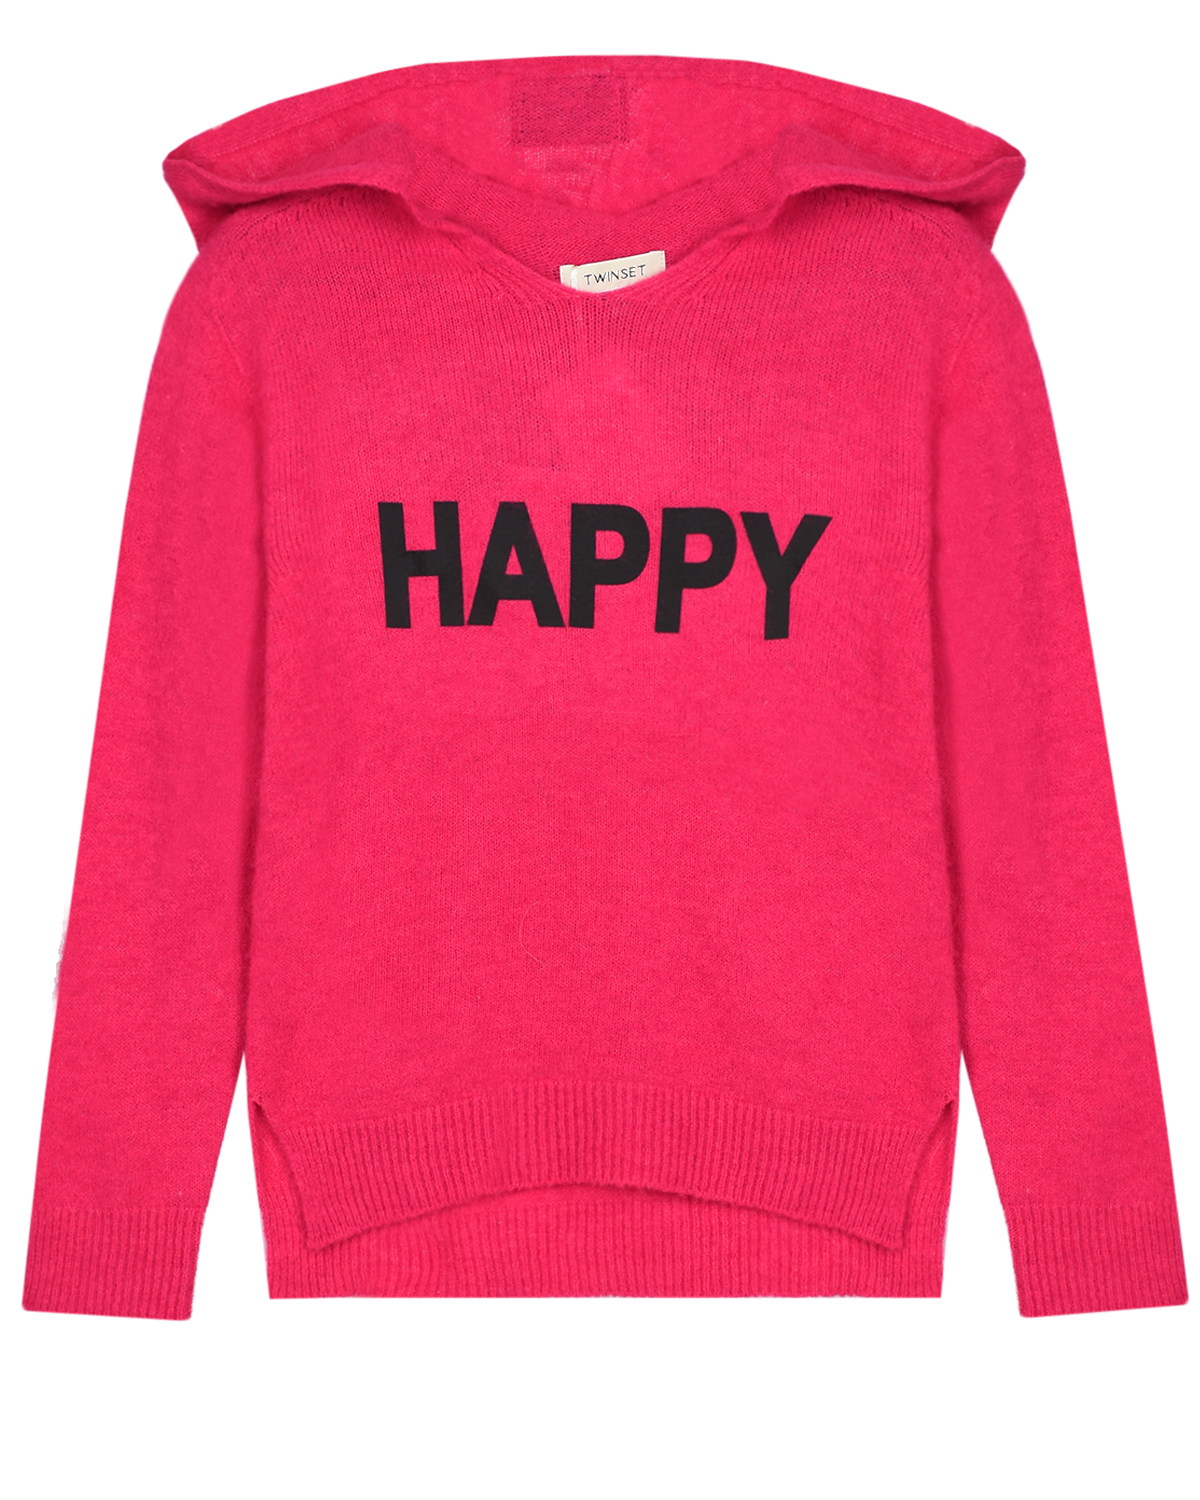 Розовый джемпер с принтом "HAPPY" TWINSET детский, размер 140 - фото 1